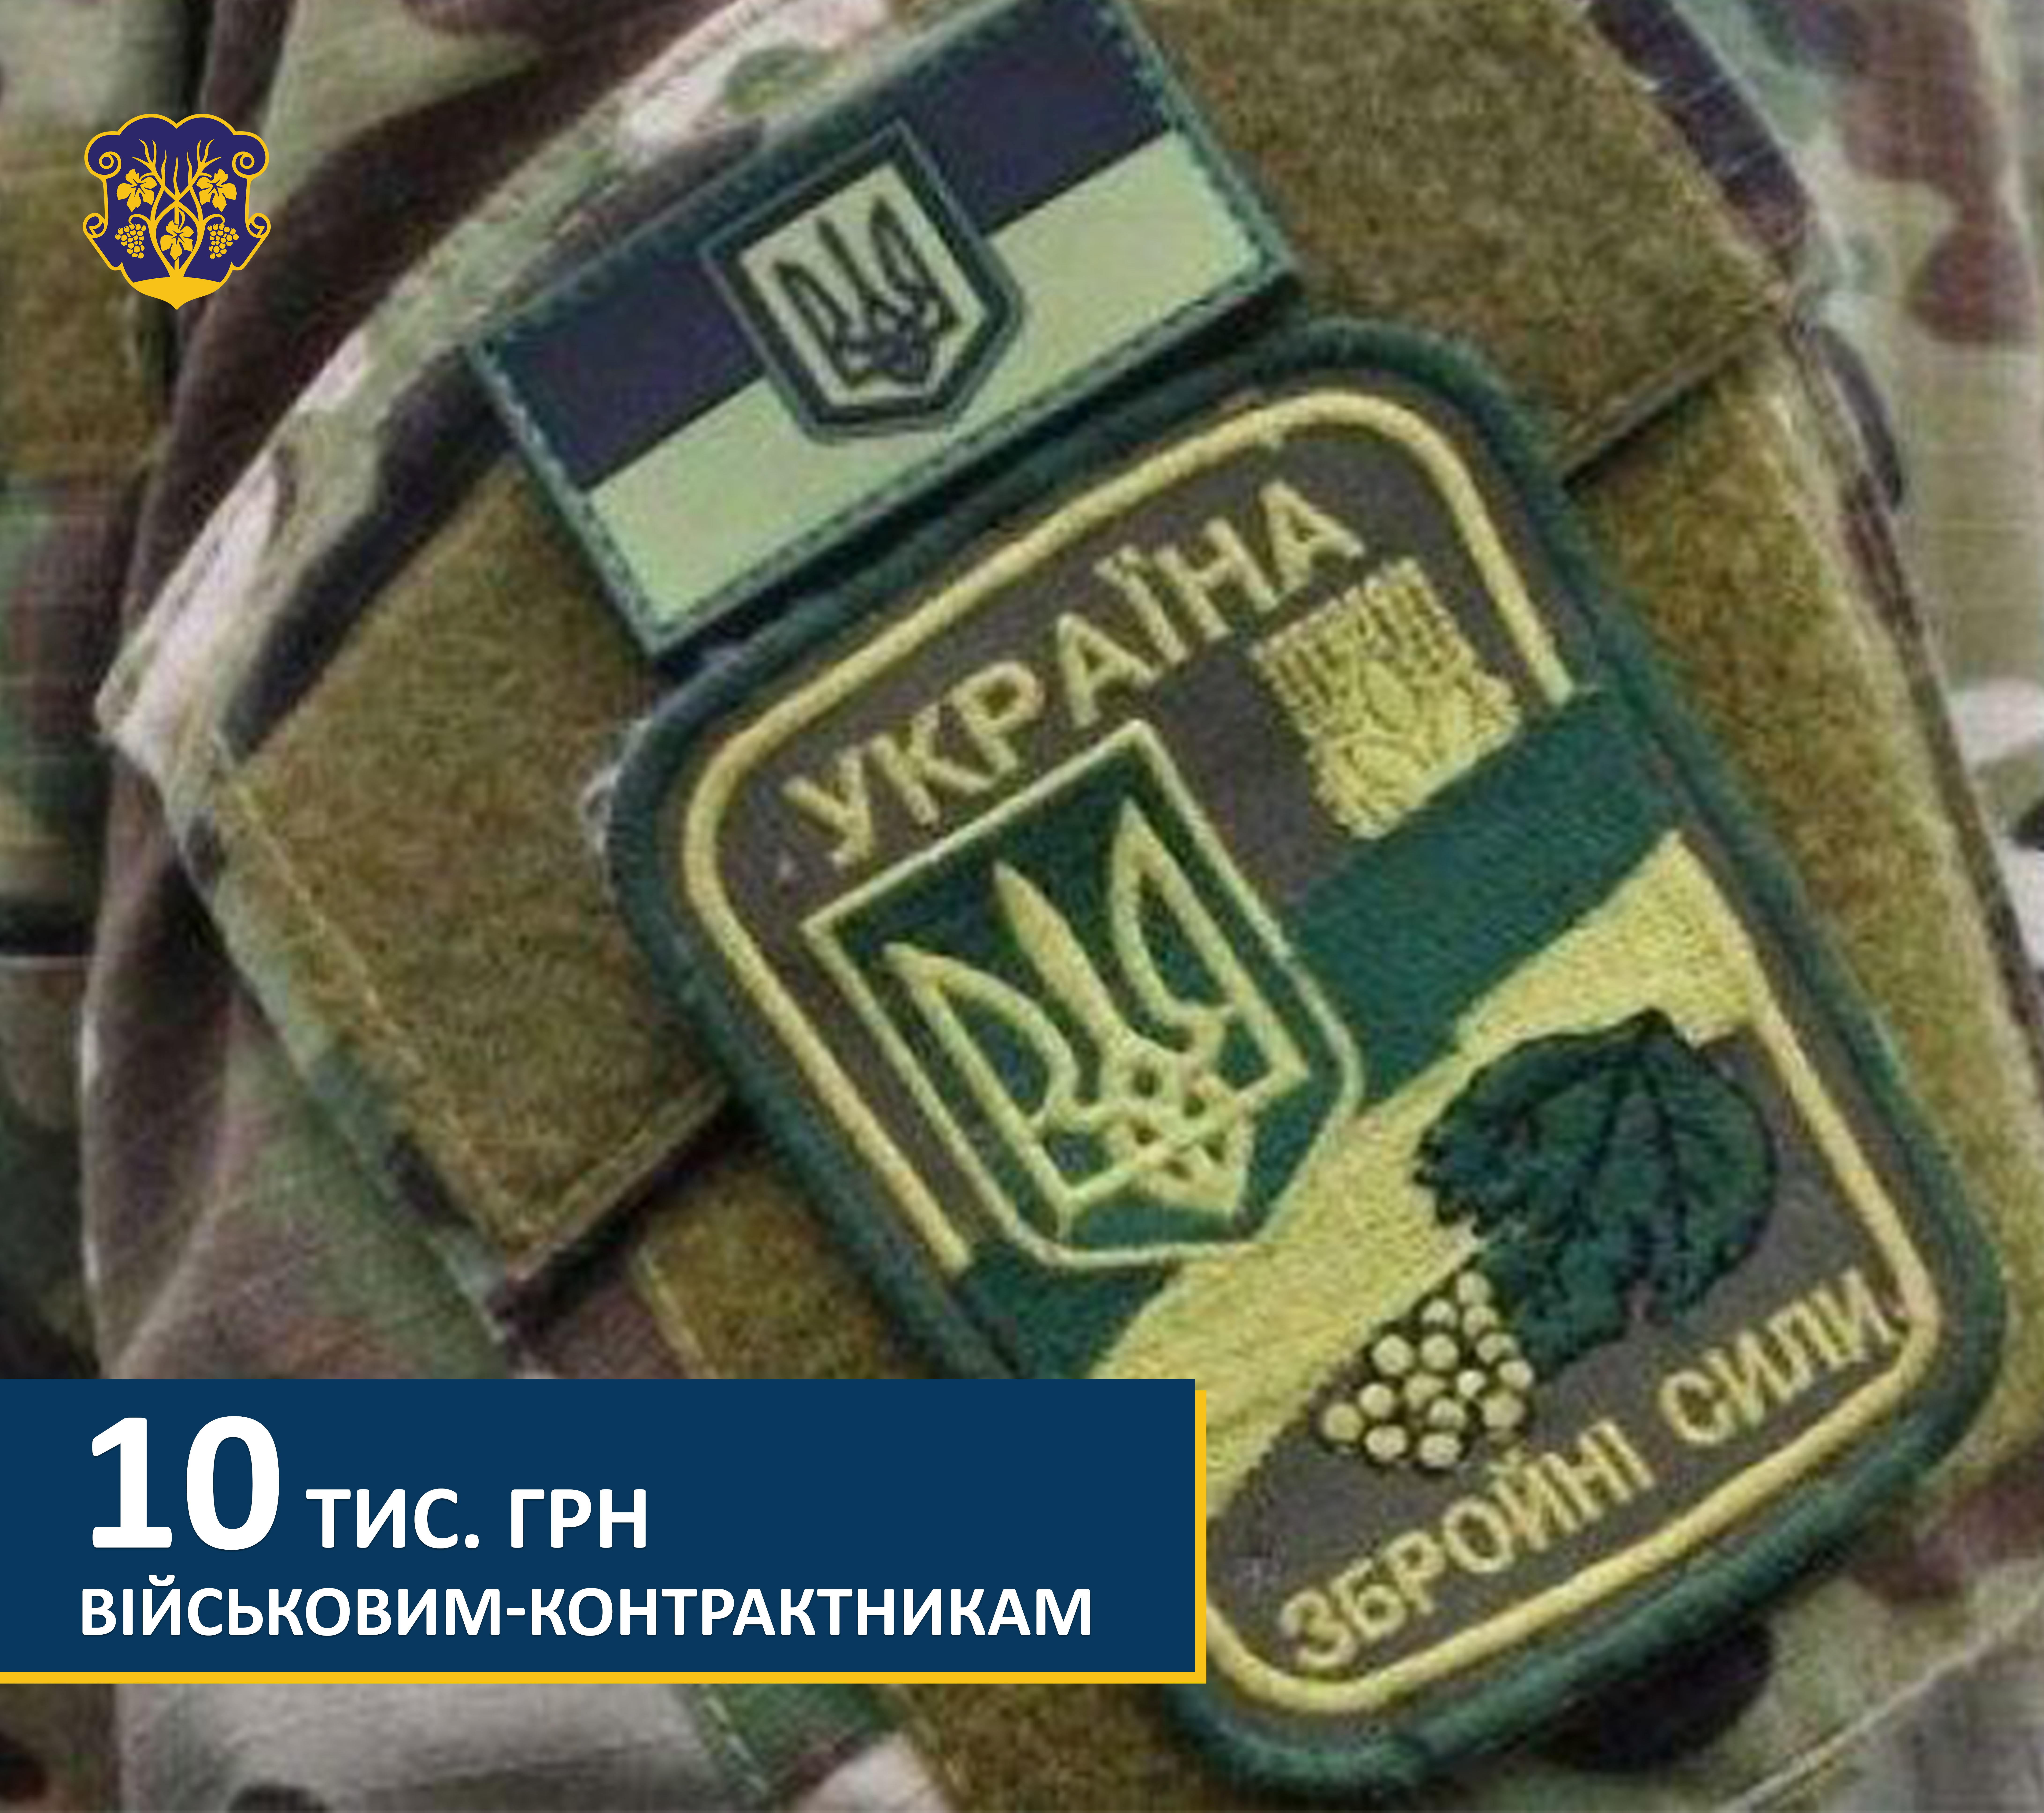 530 тис грн спрямували із міського бюджету Ужгорода на виплати військовослужбовцям-контрактникам